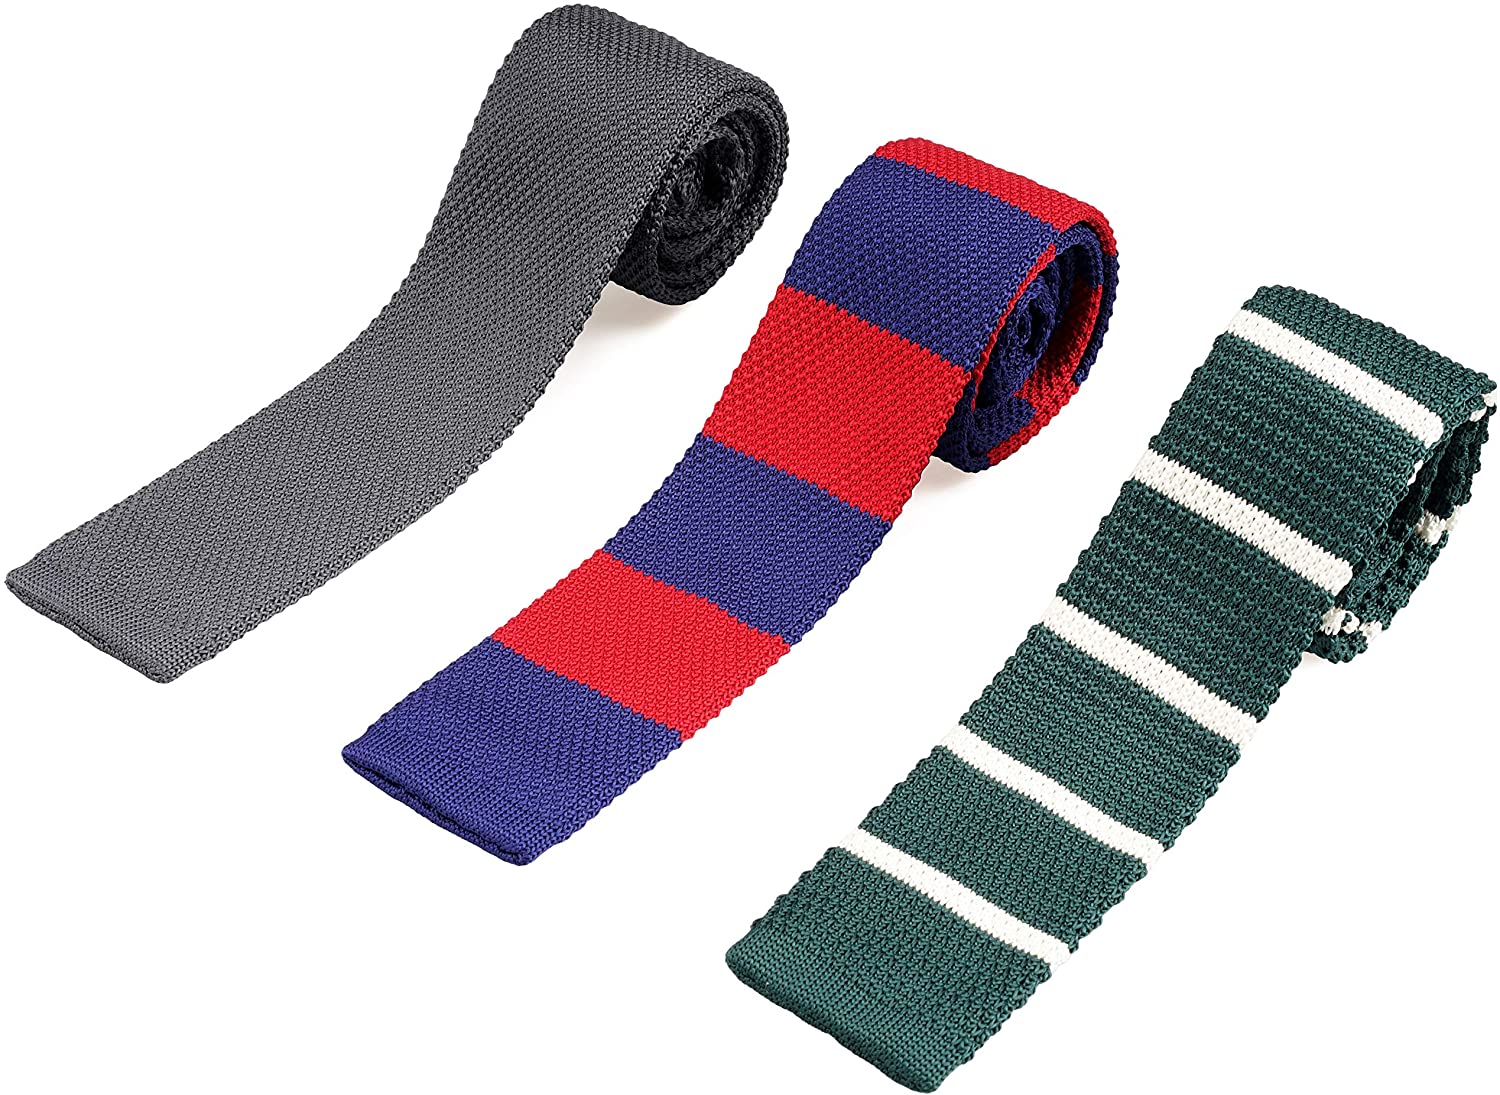 ZENXUS 2.2 Skinny Knit Neckties 3-Pack Flat End Sock Ties Classic for Men